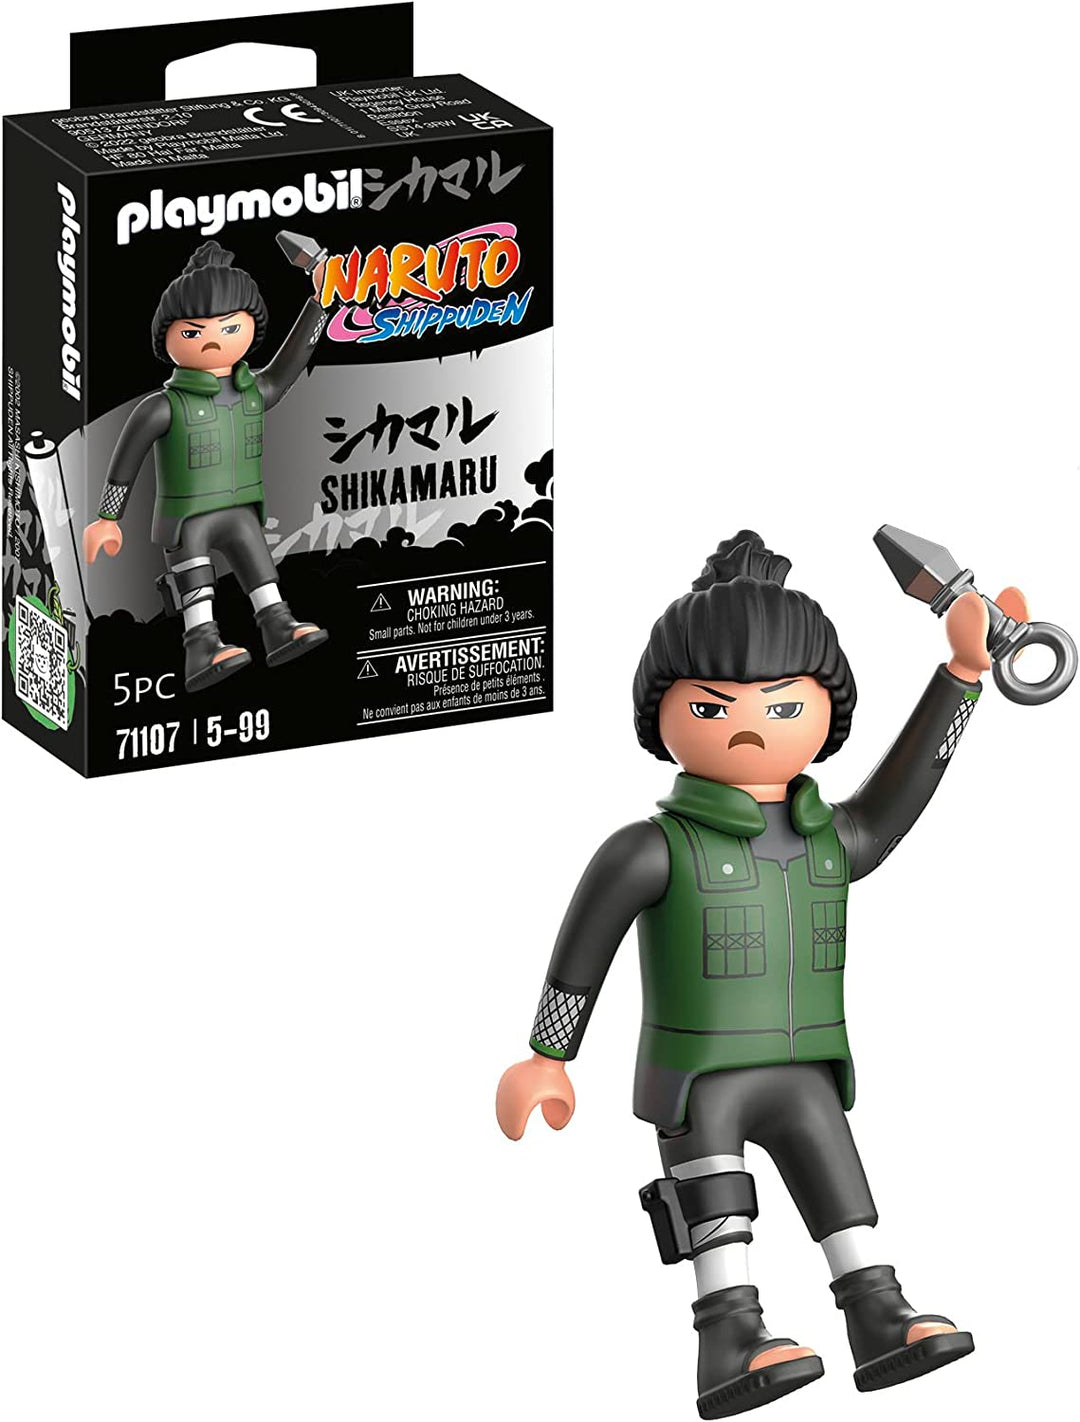 Playmobil 71107 Naruto: Shikamaru Figurenset